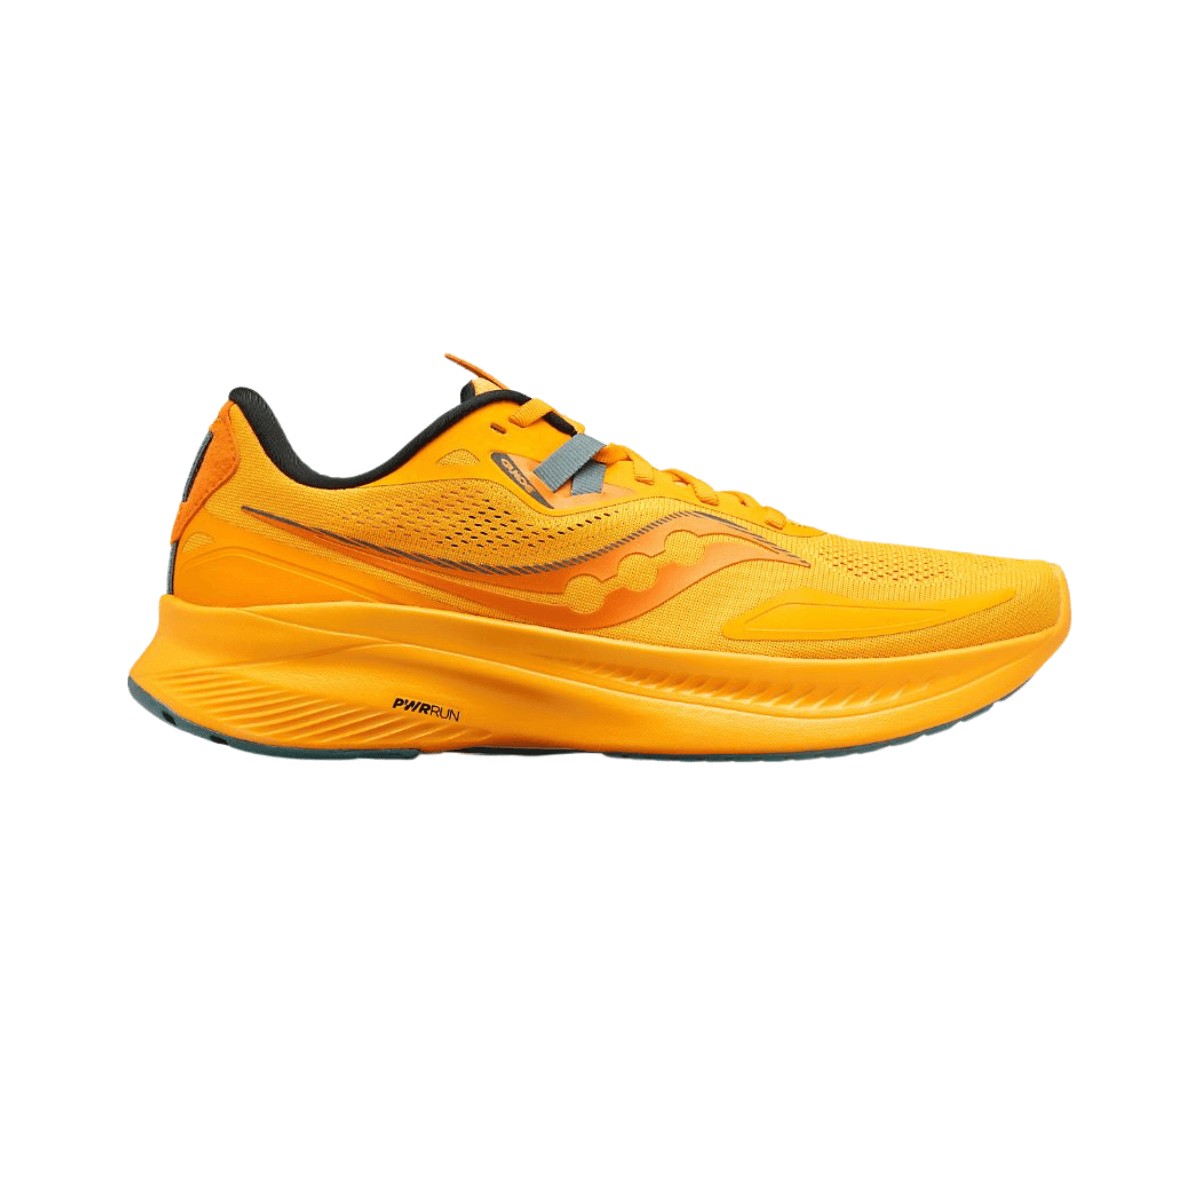 Sapatos Guia Saucony 15 Orange AW22, Tamanho 41 - EUR